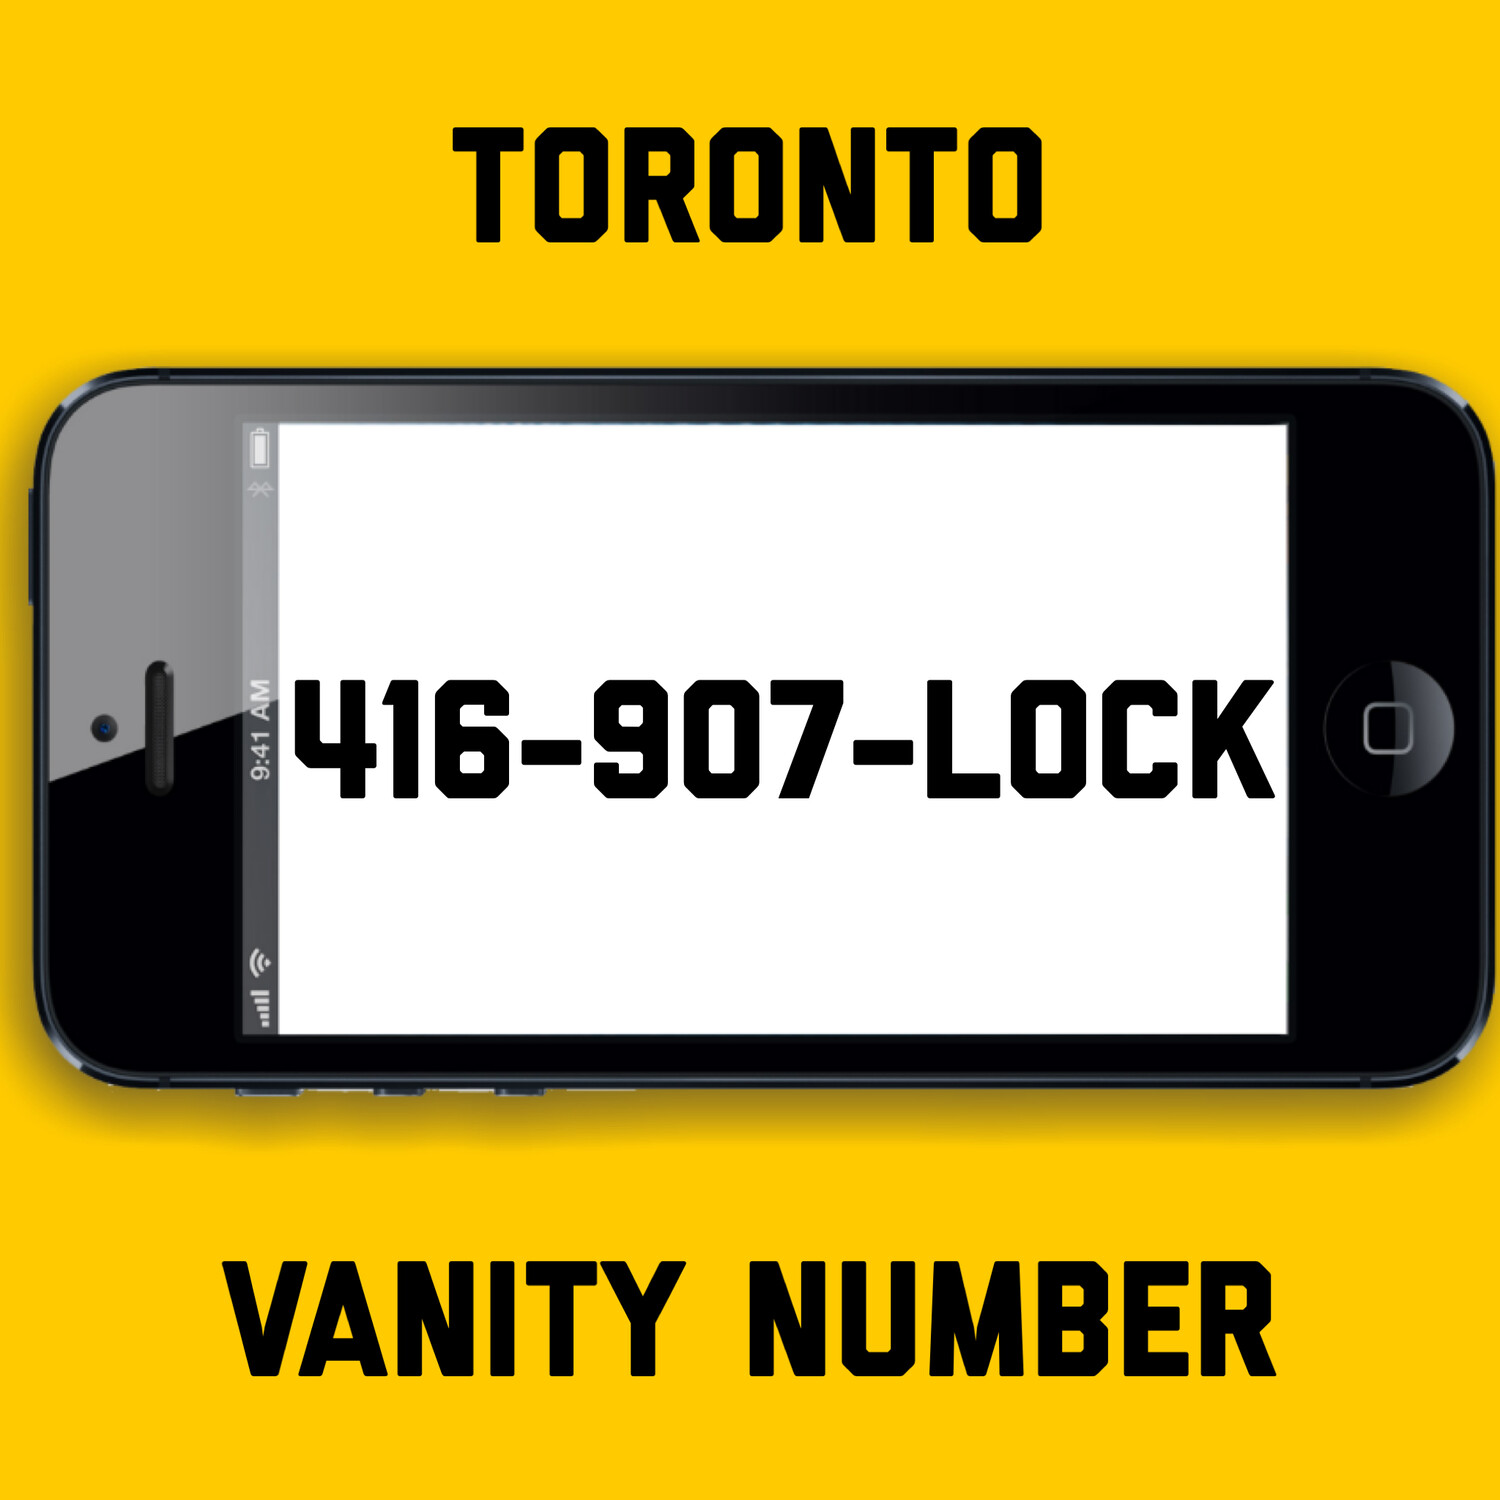 416-907-LOCK VANITY NUMBER TORONTO